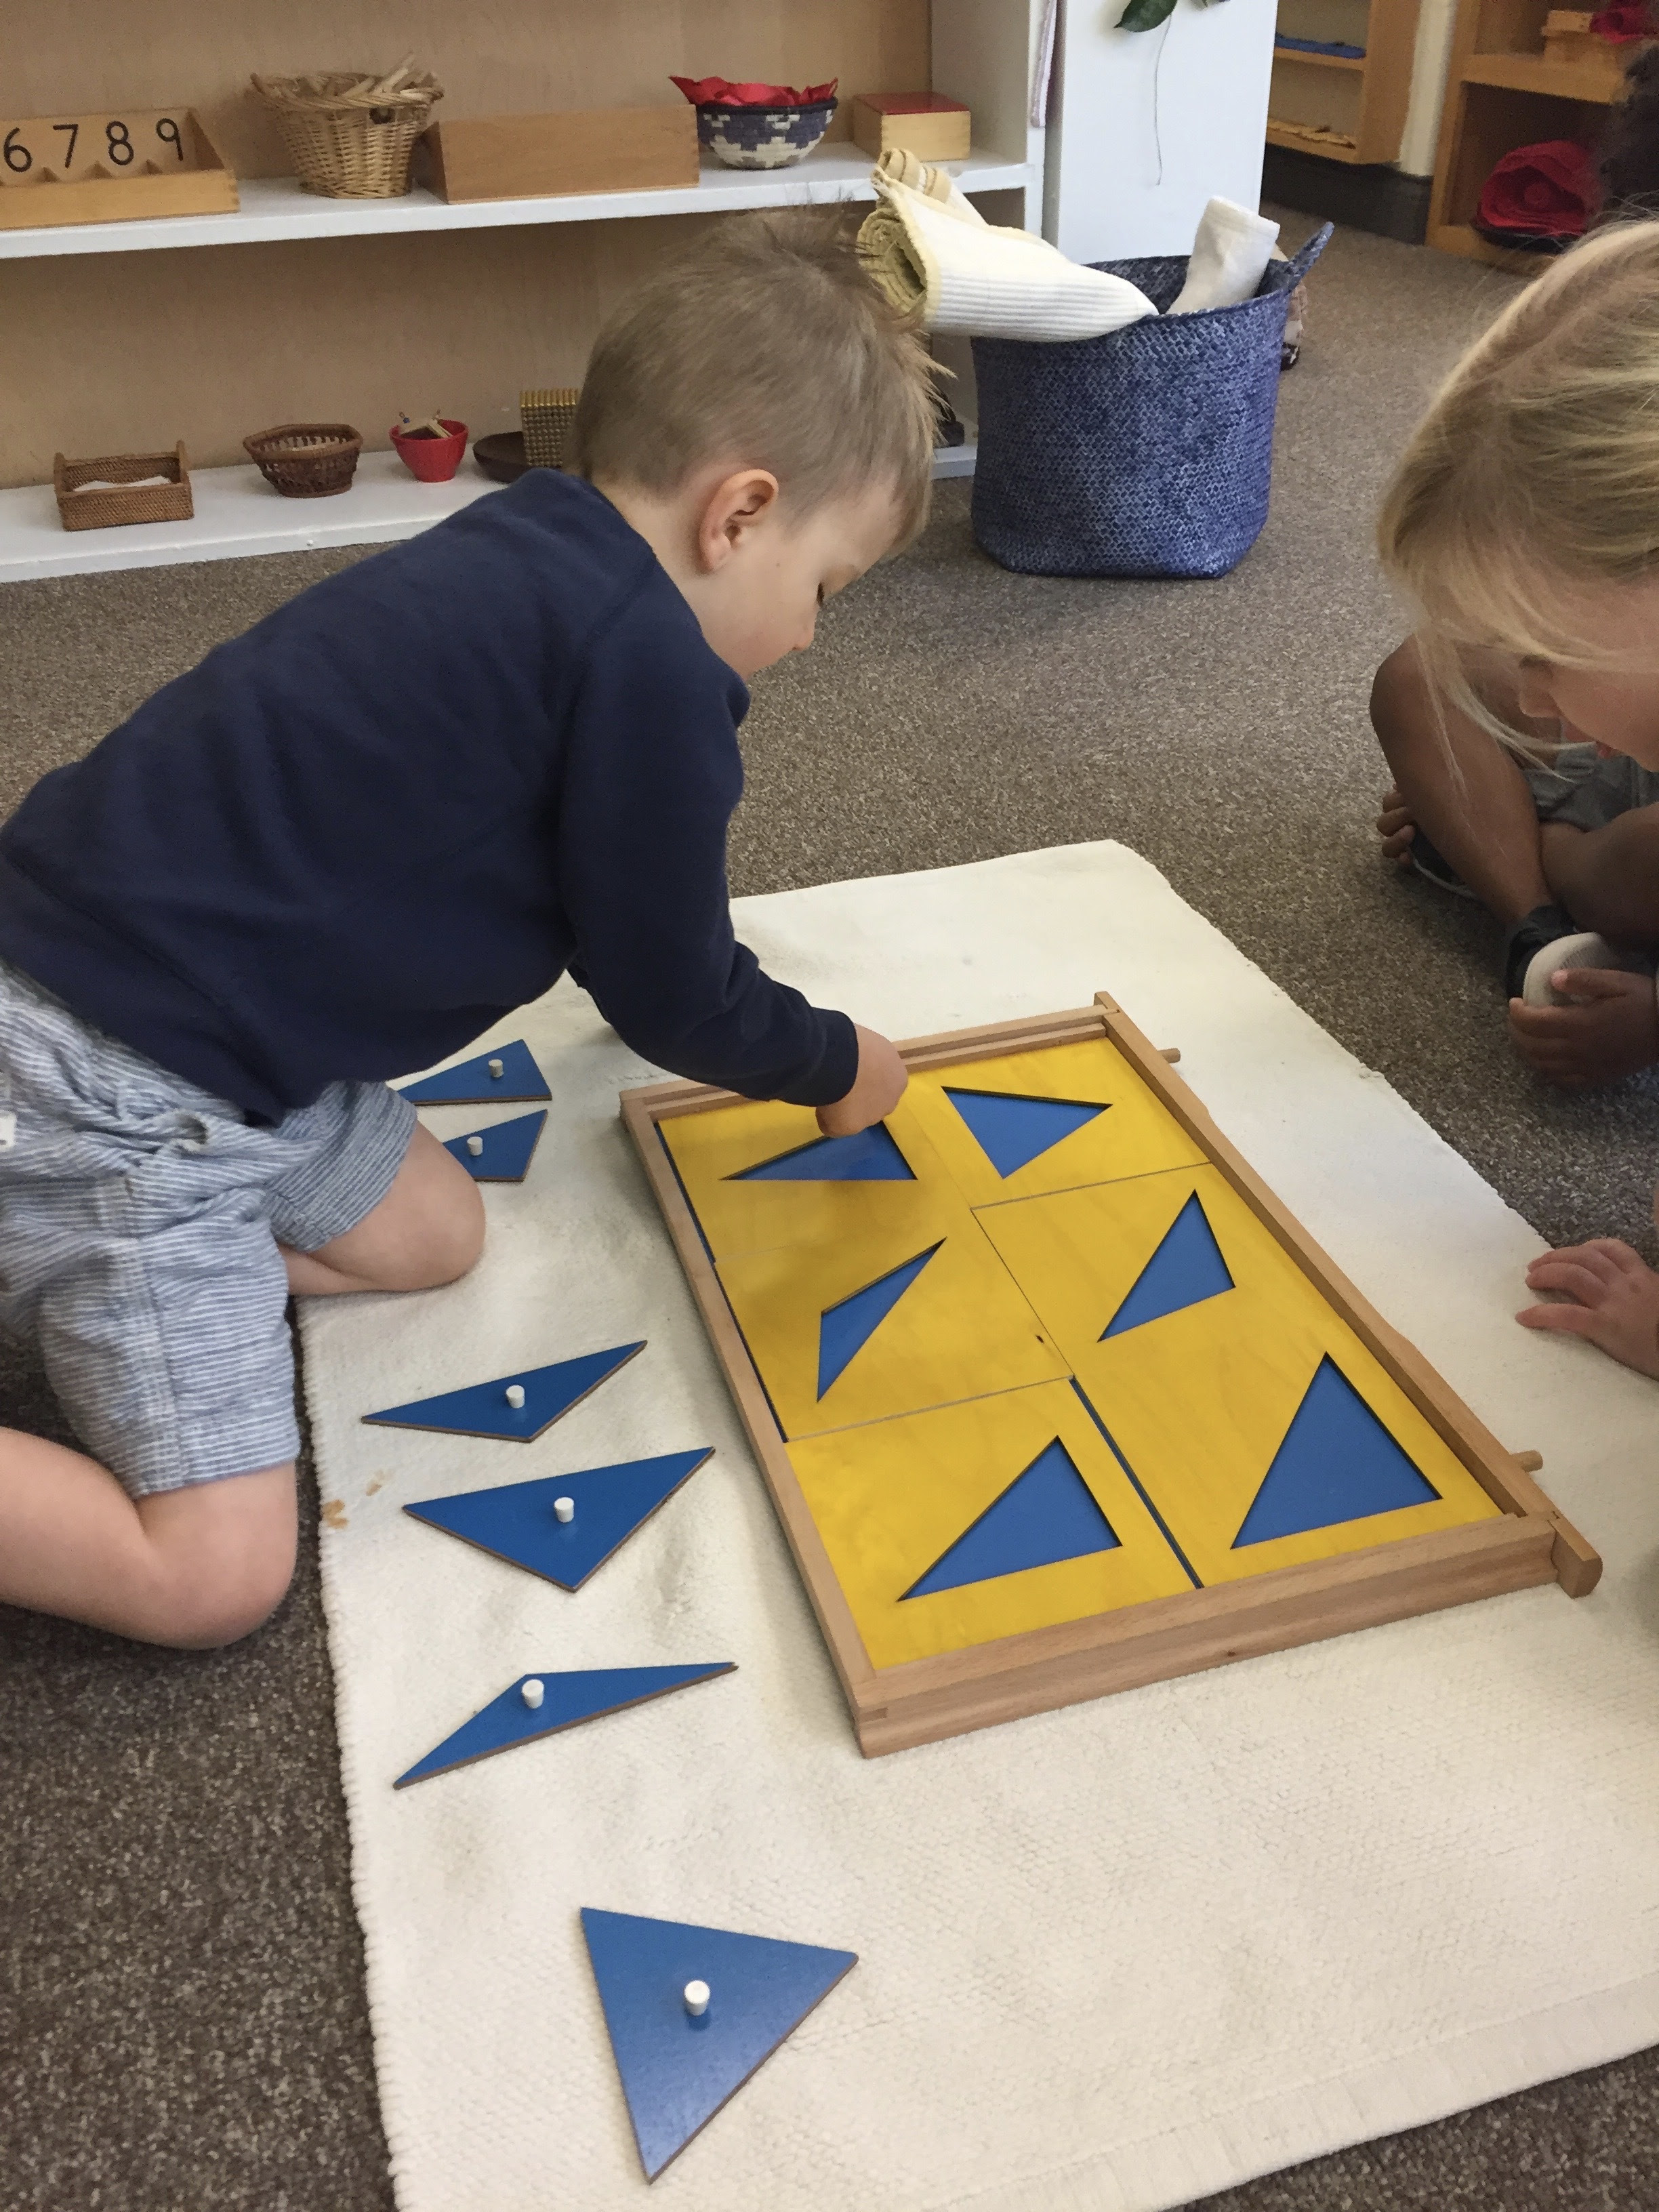 Inside Escuela: Montessori Materials &#8211; The Importance of Movement